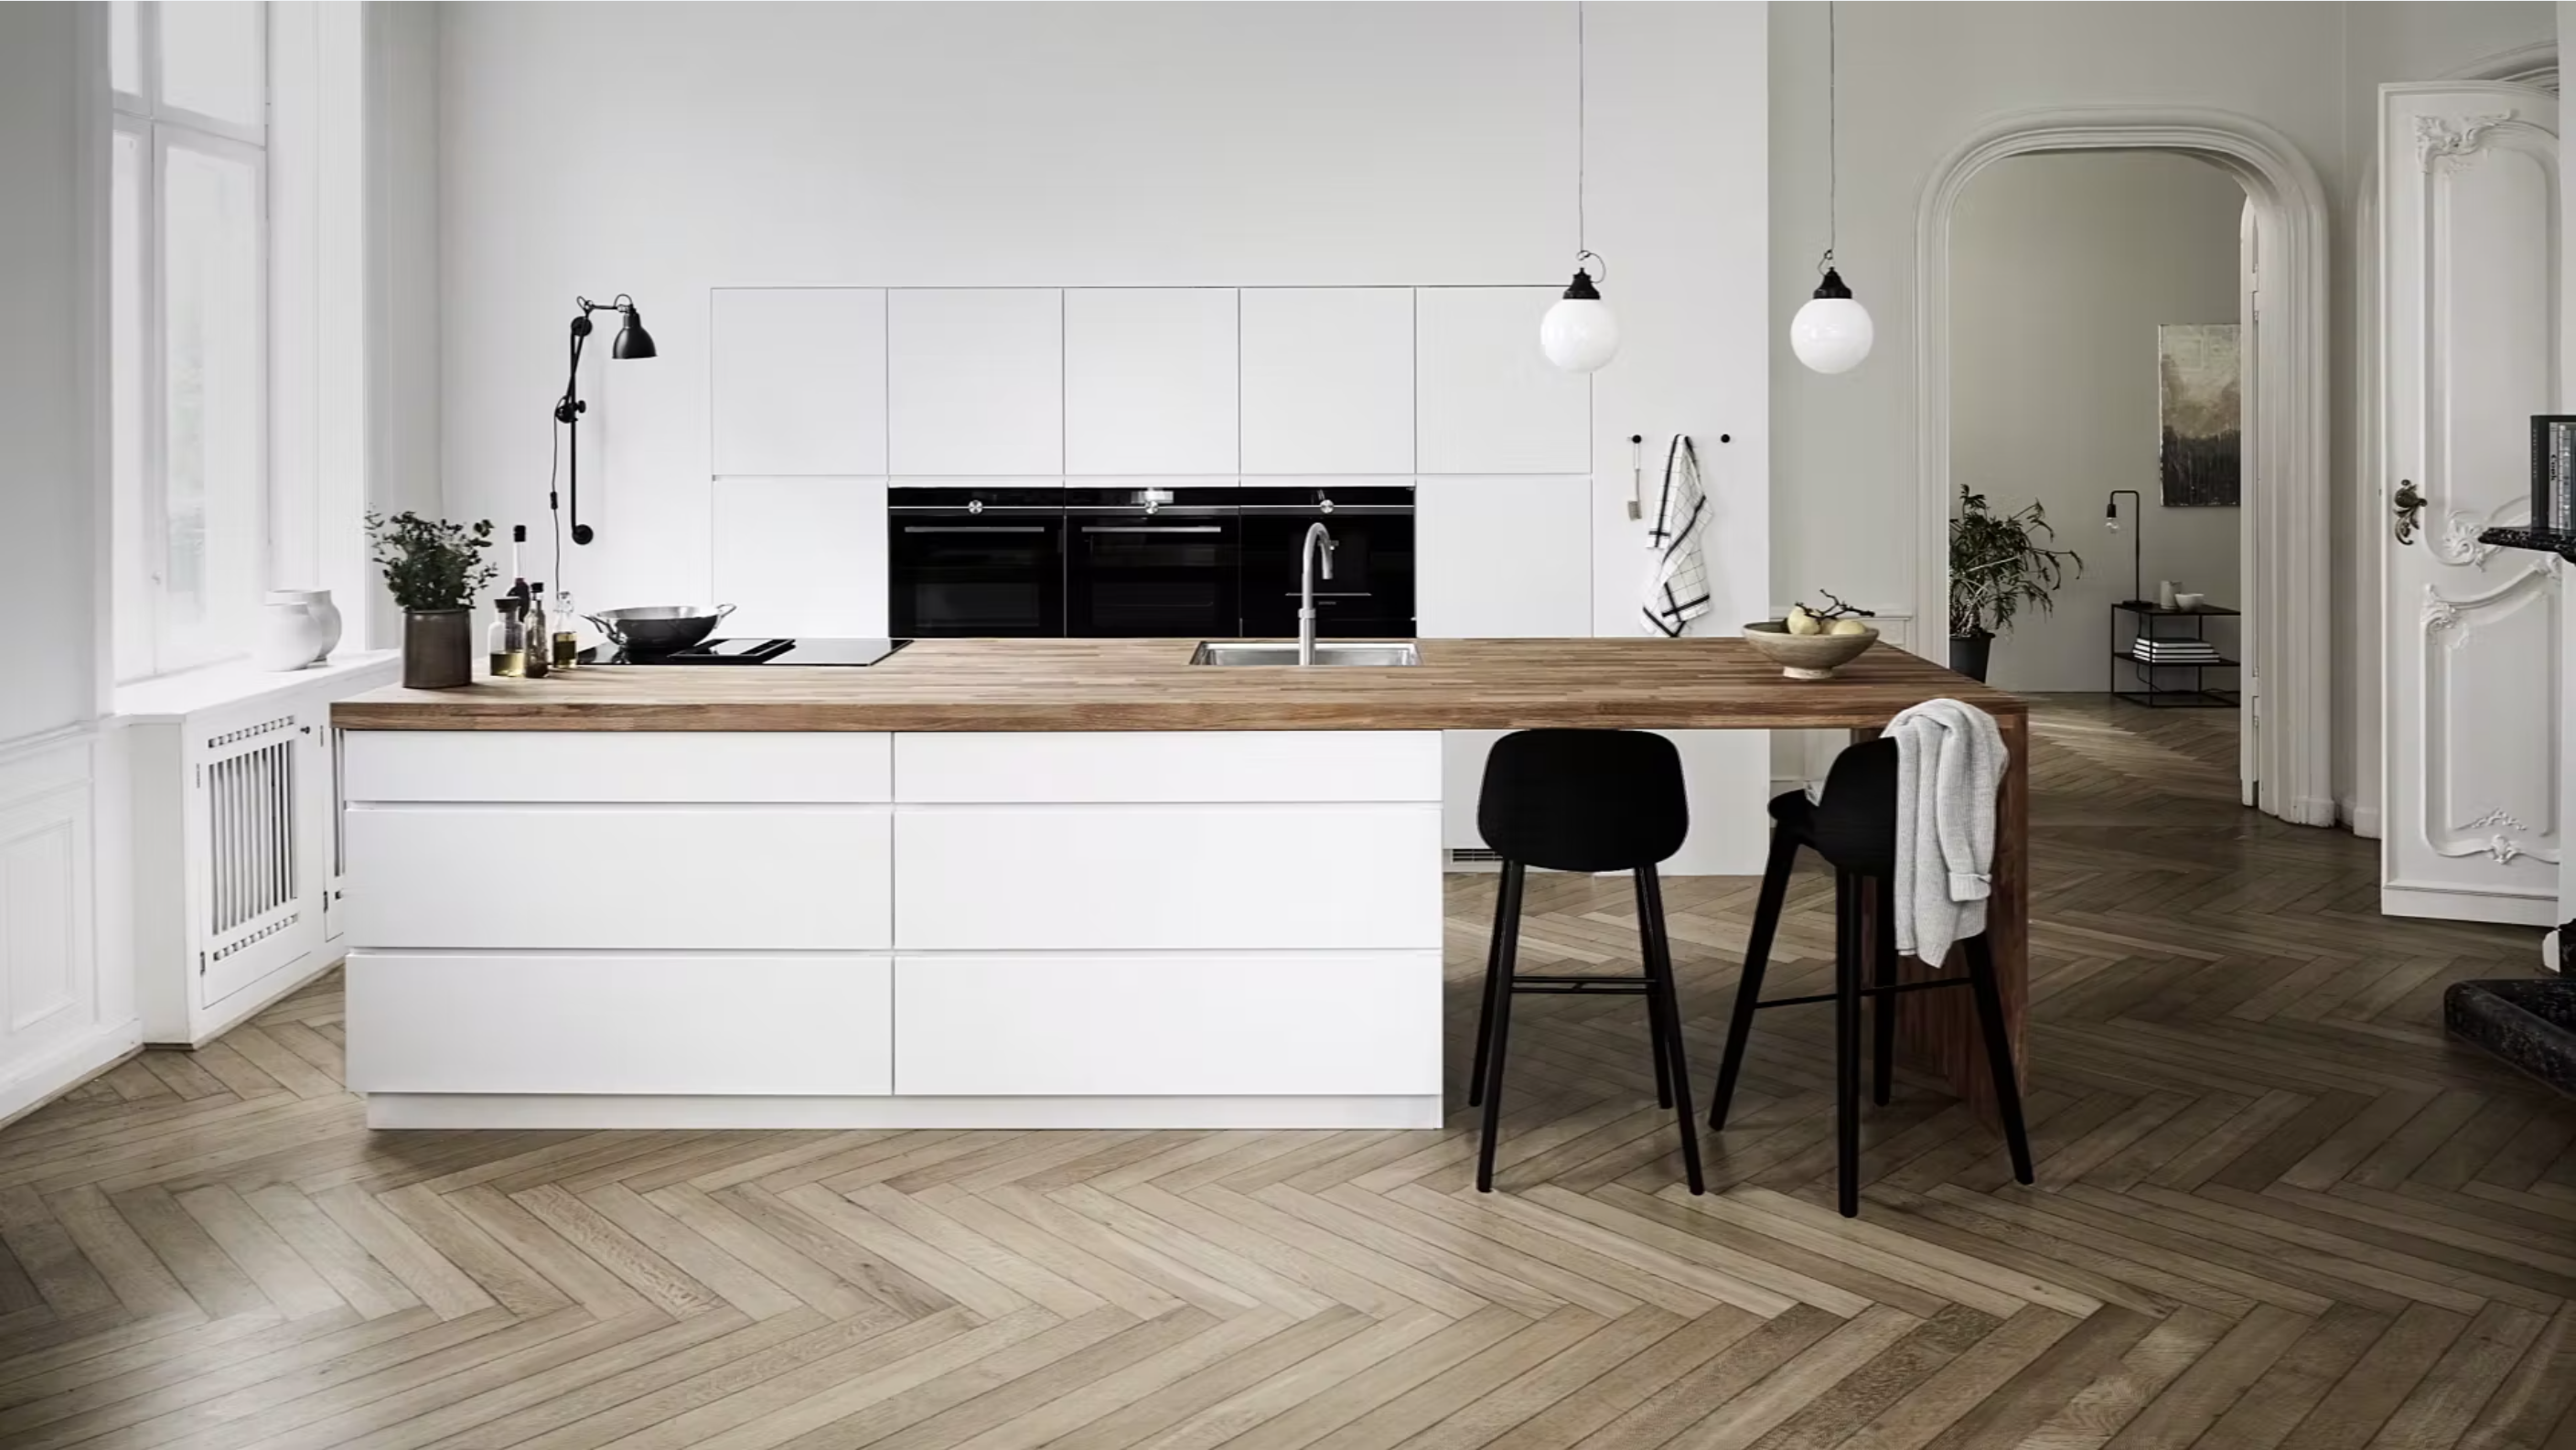 Kvik | Køkken, & Garderobe i stilrent dansk design